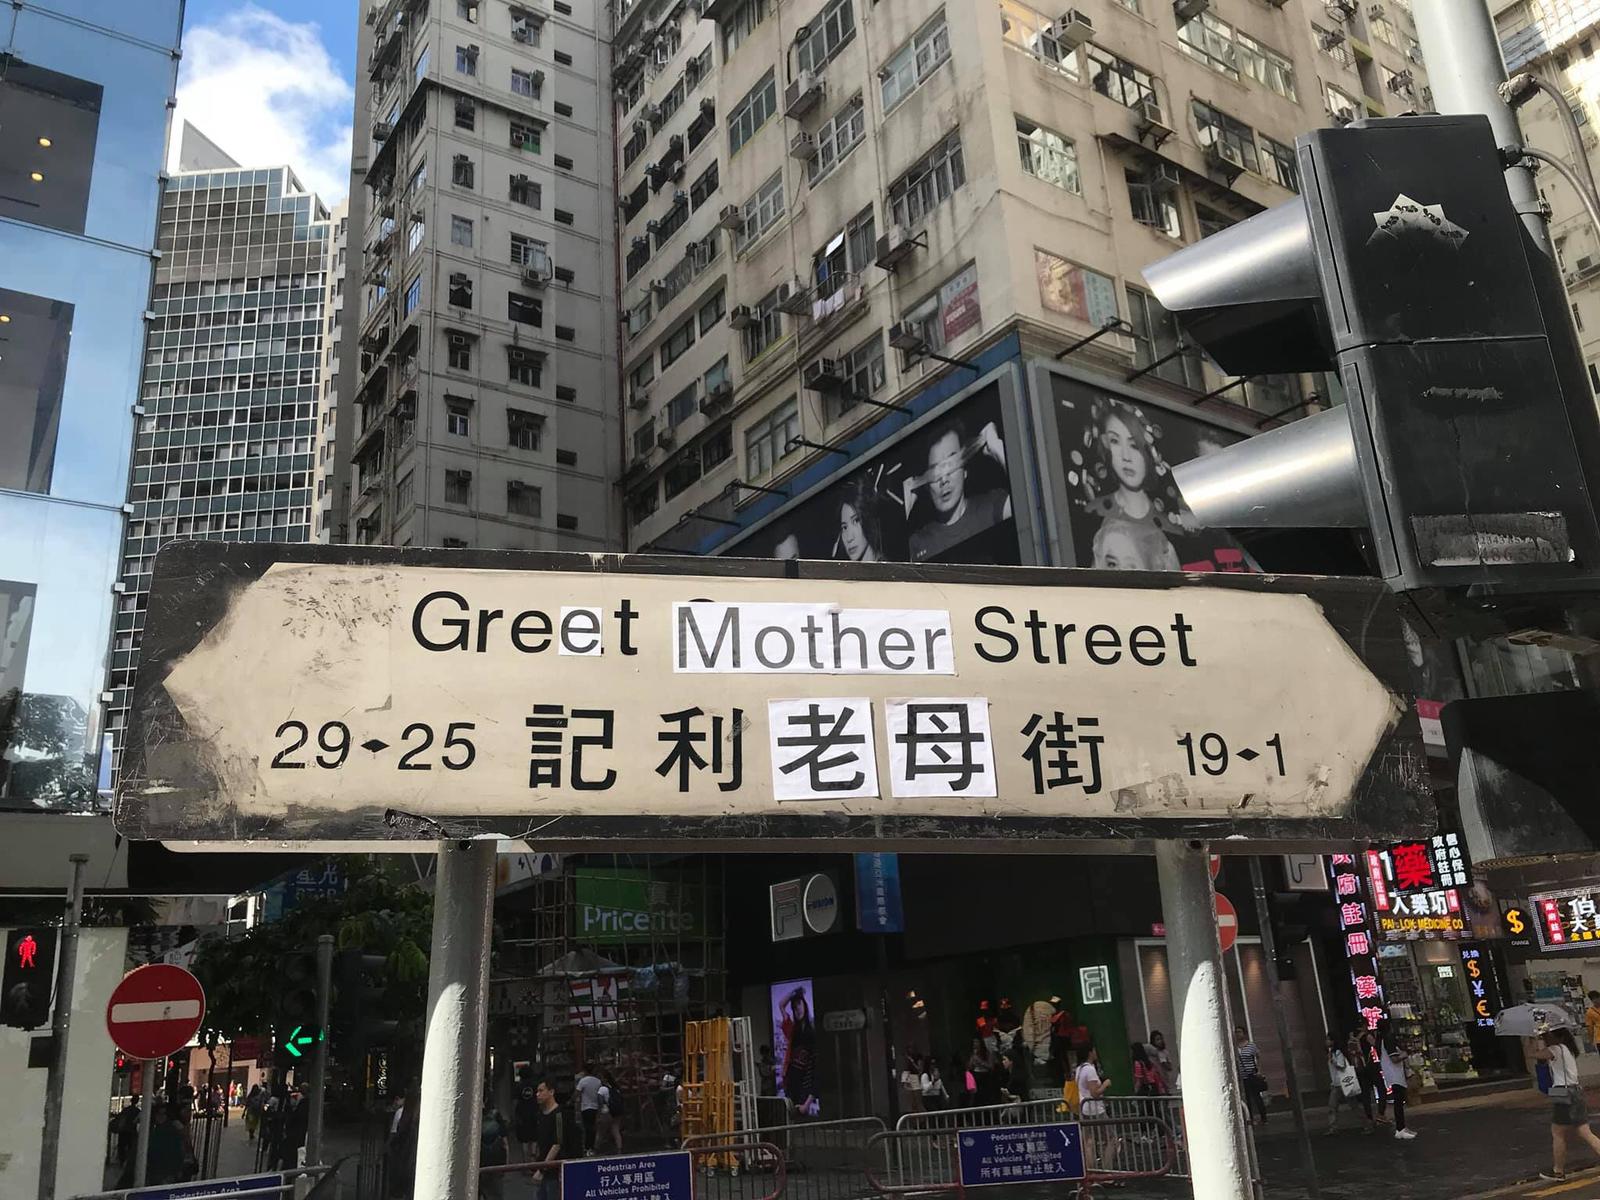 記利老母街 great mother street.jpg